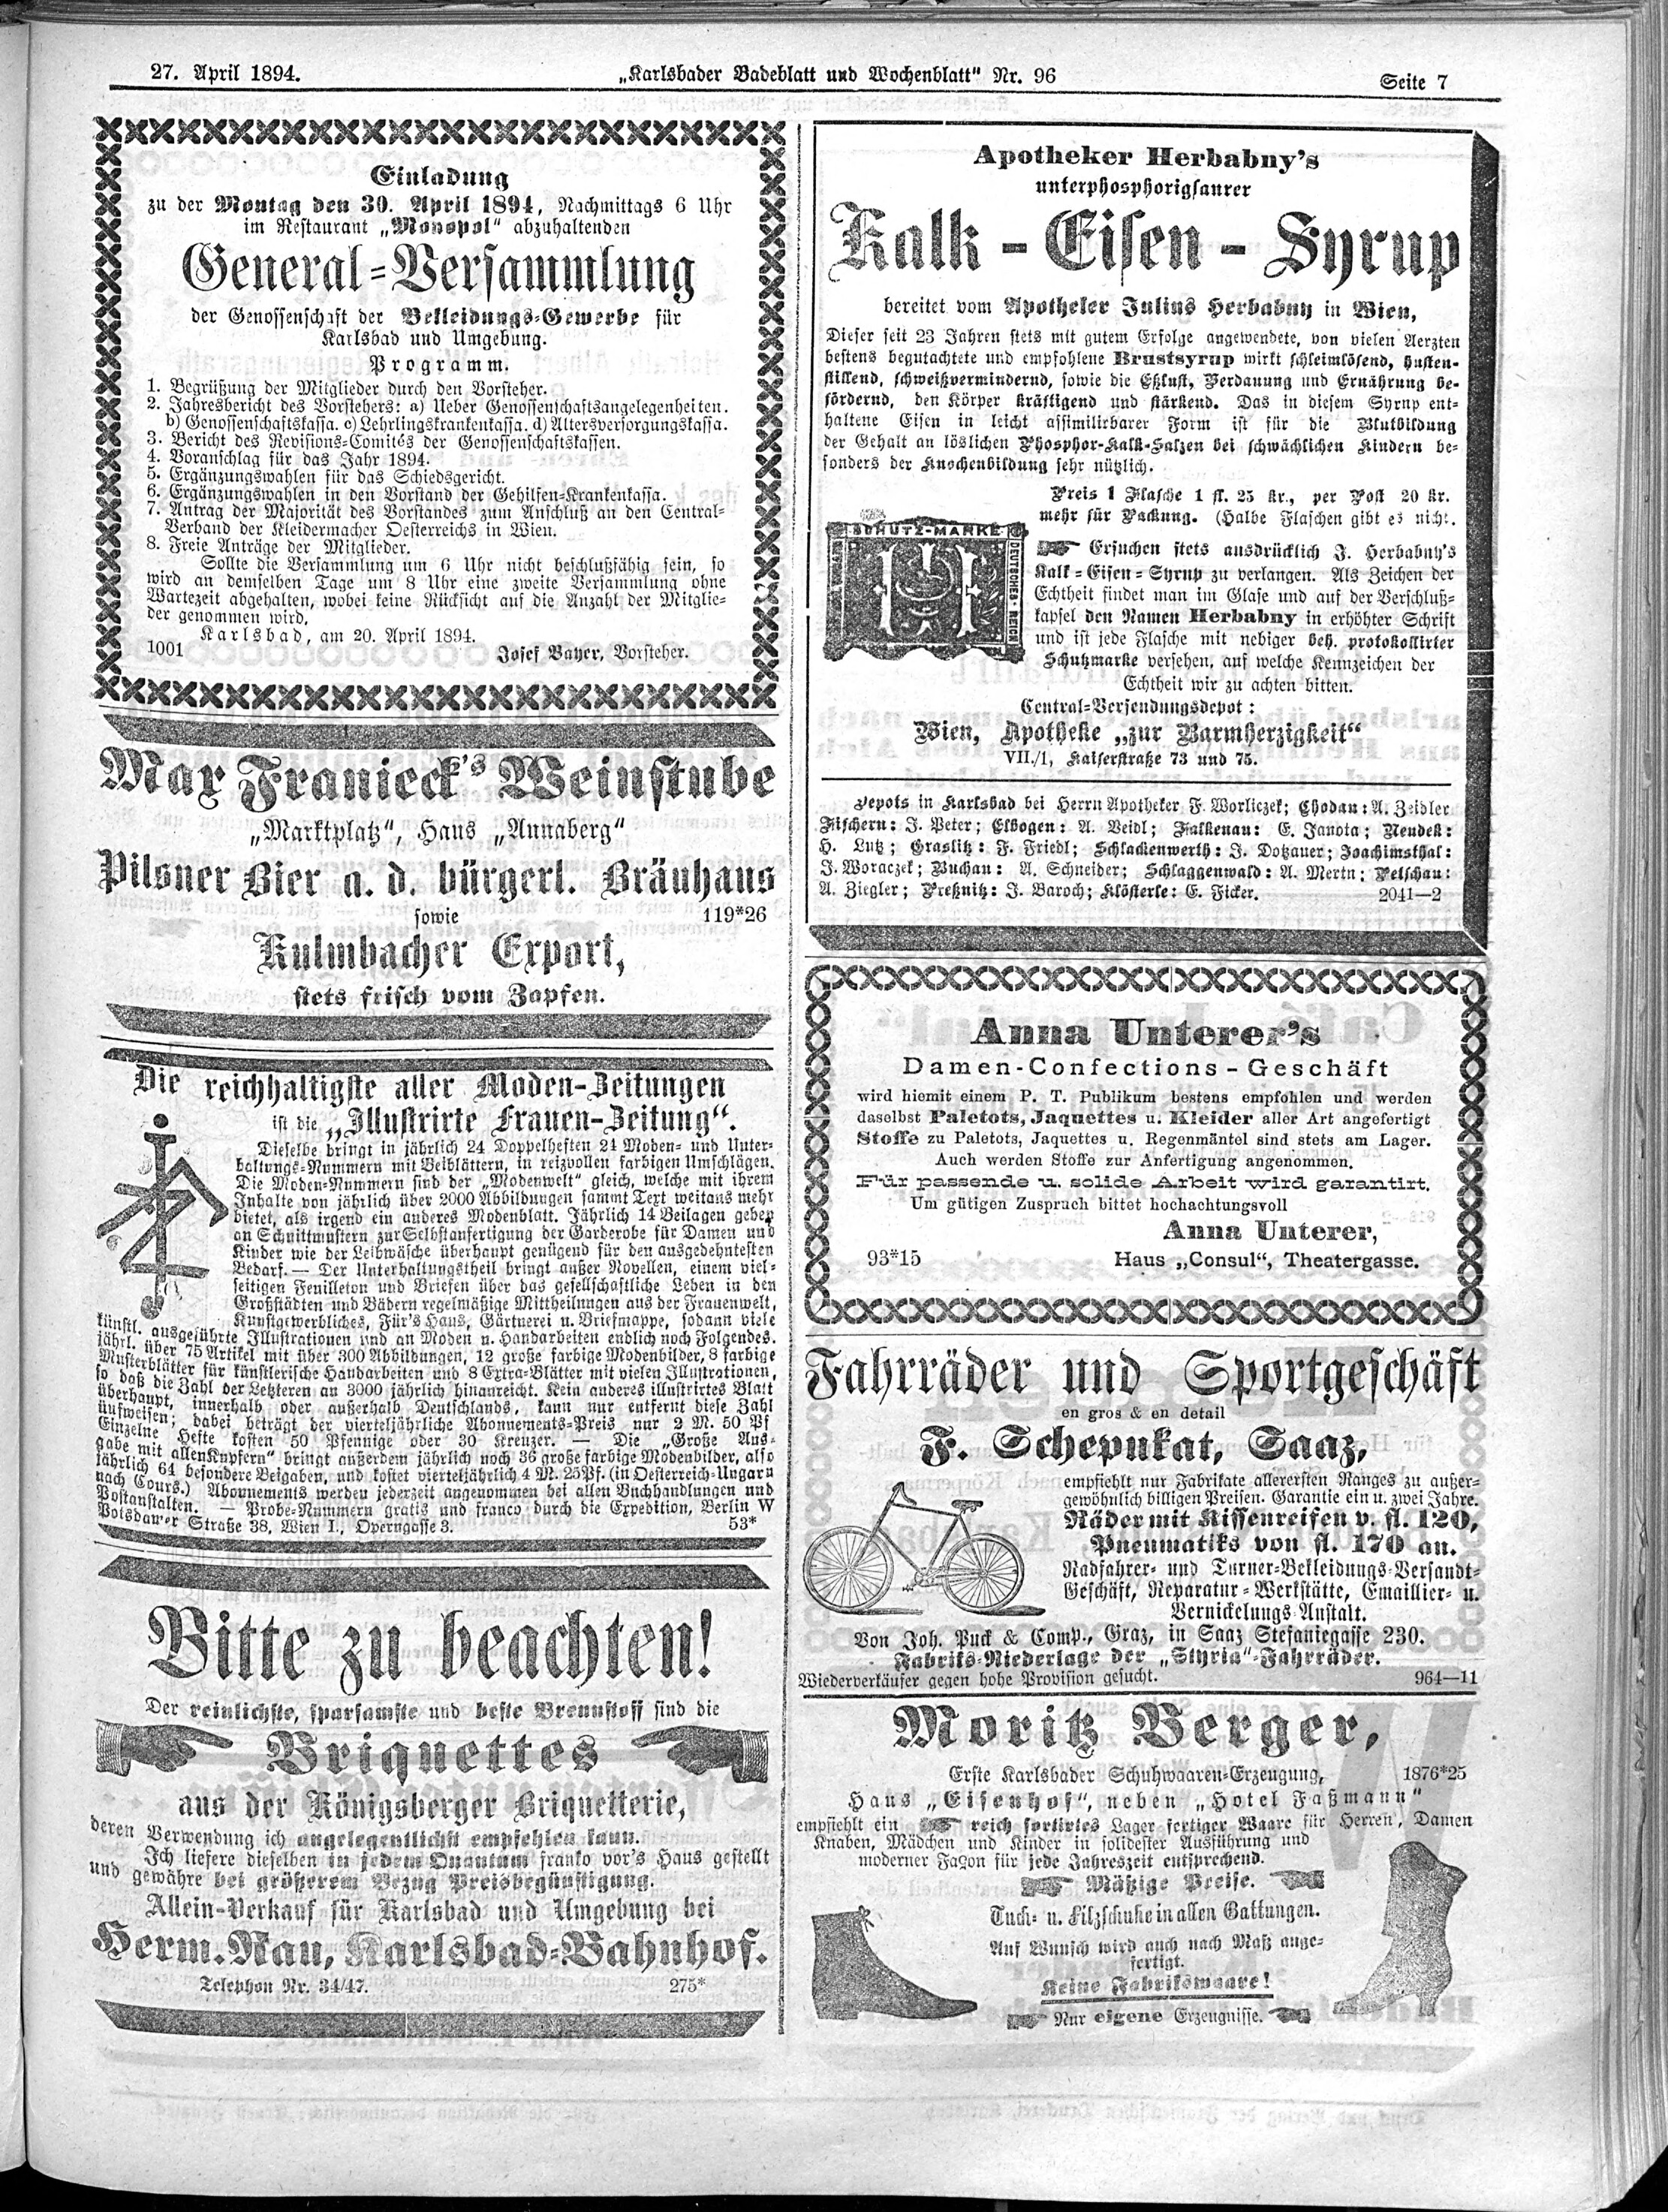 7. karlsbader-badeblatt-1894-04-27-n96_3955